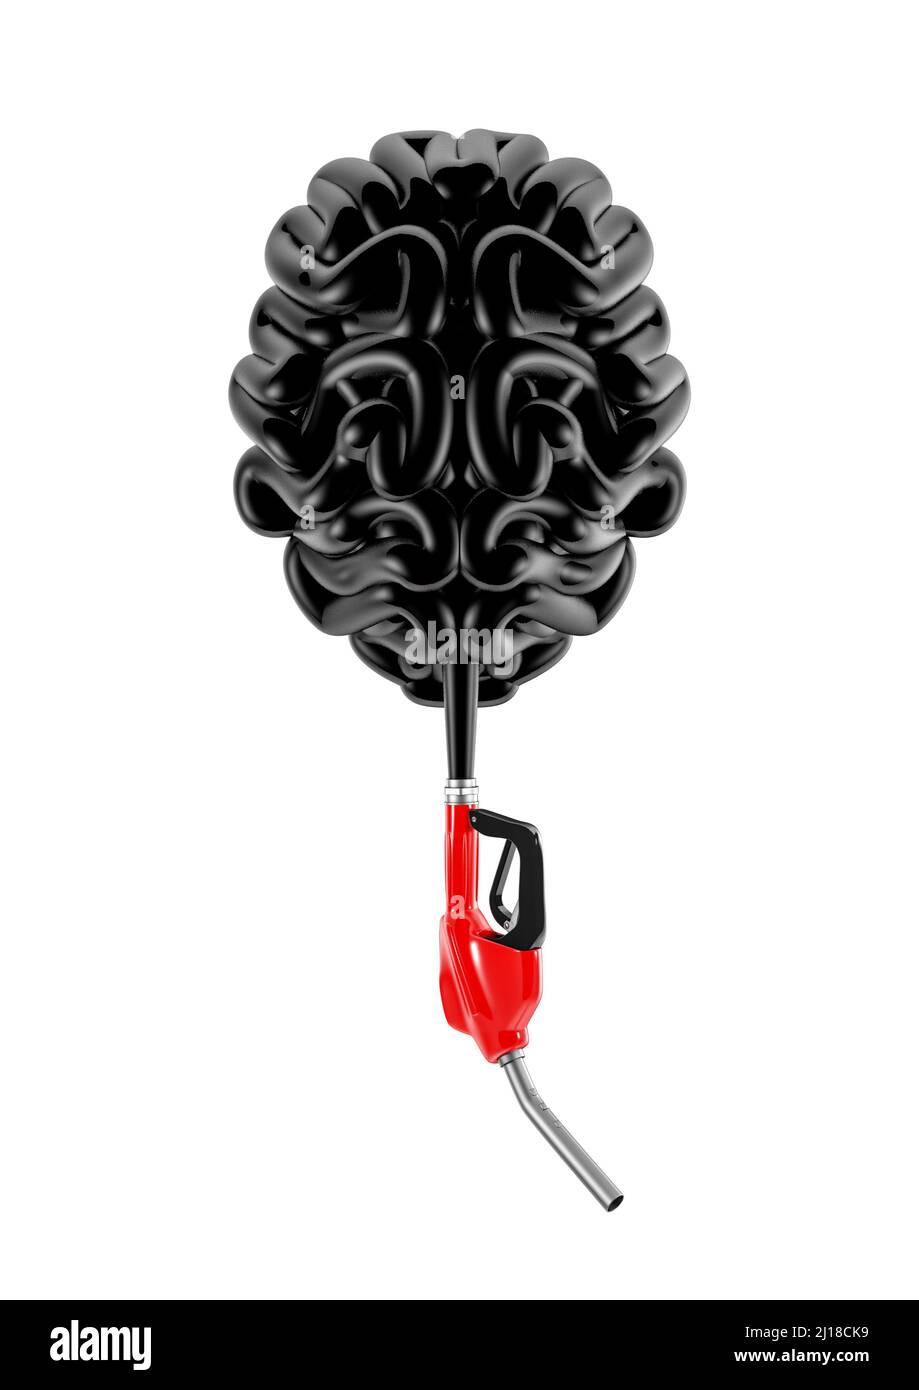 Crise pétrolière esprit stressé - 3D illustration de la formation de flexible d'essence cerveau humain isolé sur fond blanc Banque D'Images